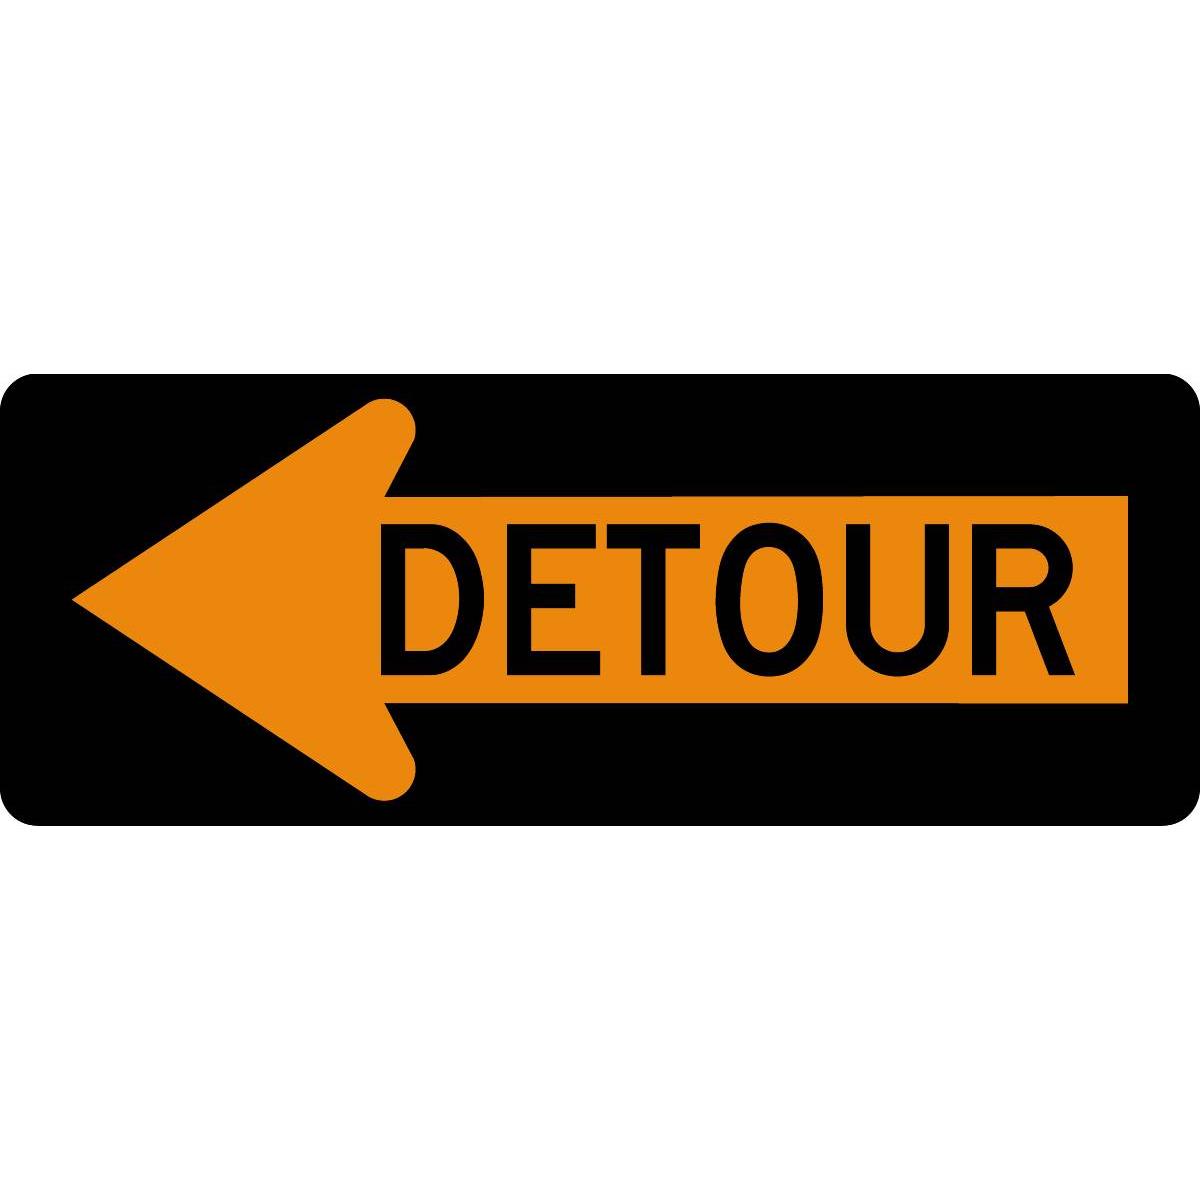 Detour Left-Arrow" Traffic Warning Sign | GEMPLER'S